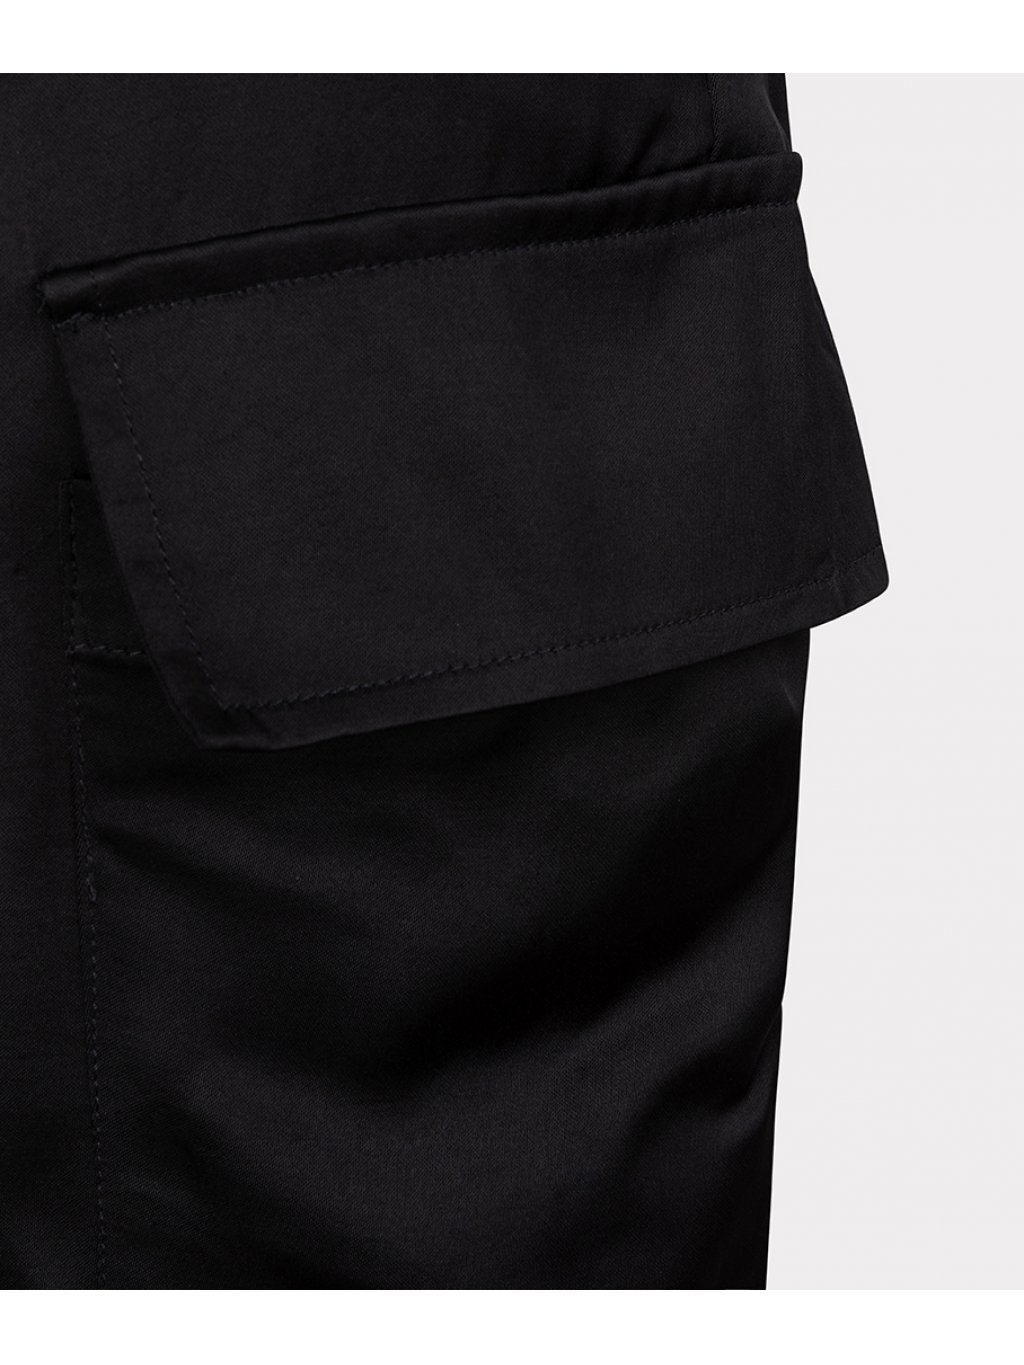 Kalhoty Esqualo 14723 černé saténové cargo styl